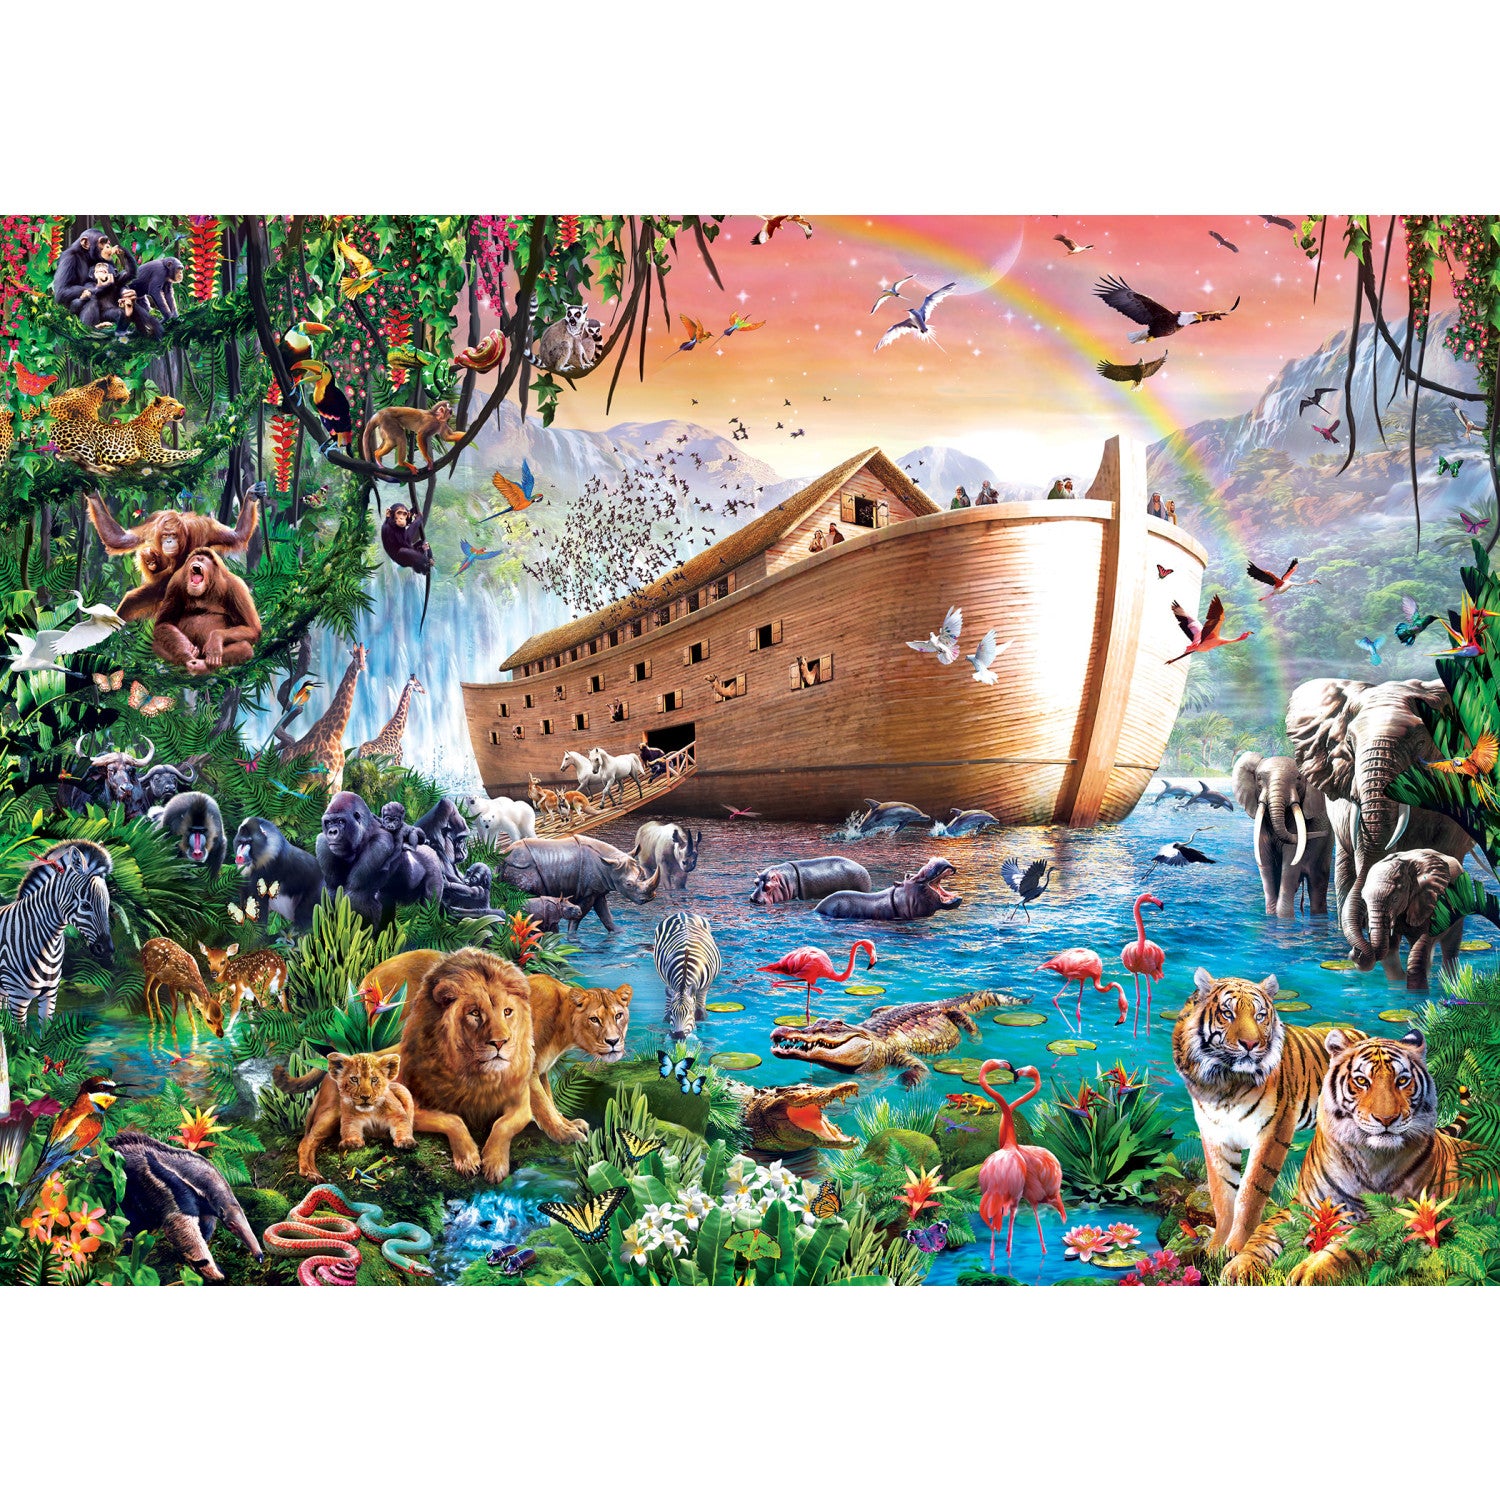 Inspirational - Noah's Ark Finds Shore 500 Piece Puzzle